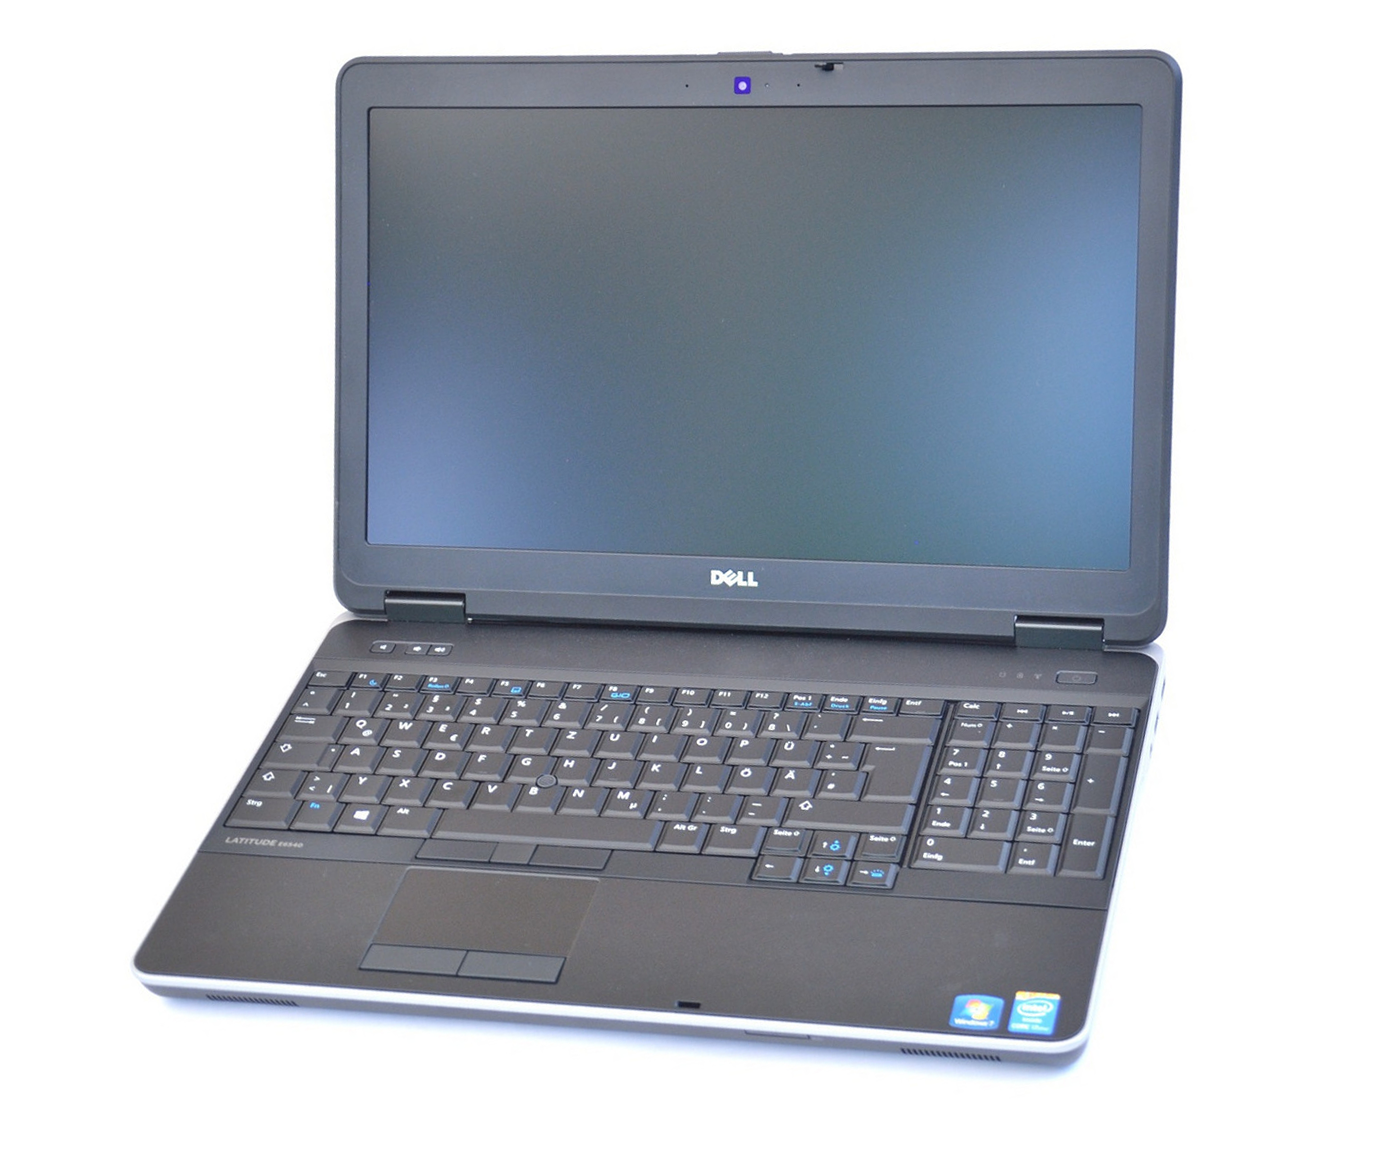 ドライブありDELL Latitude E6540 Core i5 4GB HDD500GB DVD-ROM 無線LAN フルHD Windows10 64bitWPSOffice 15.6インチ ゲーミングPC  パソコン  ノートパソコン